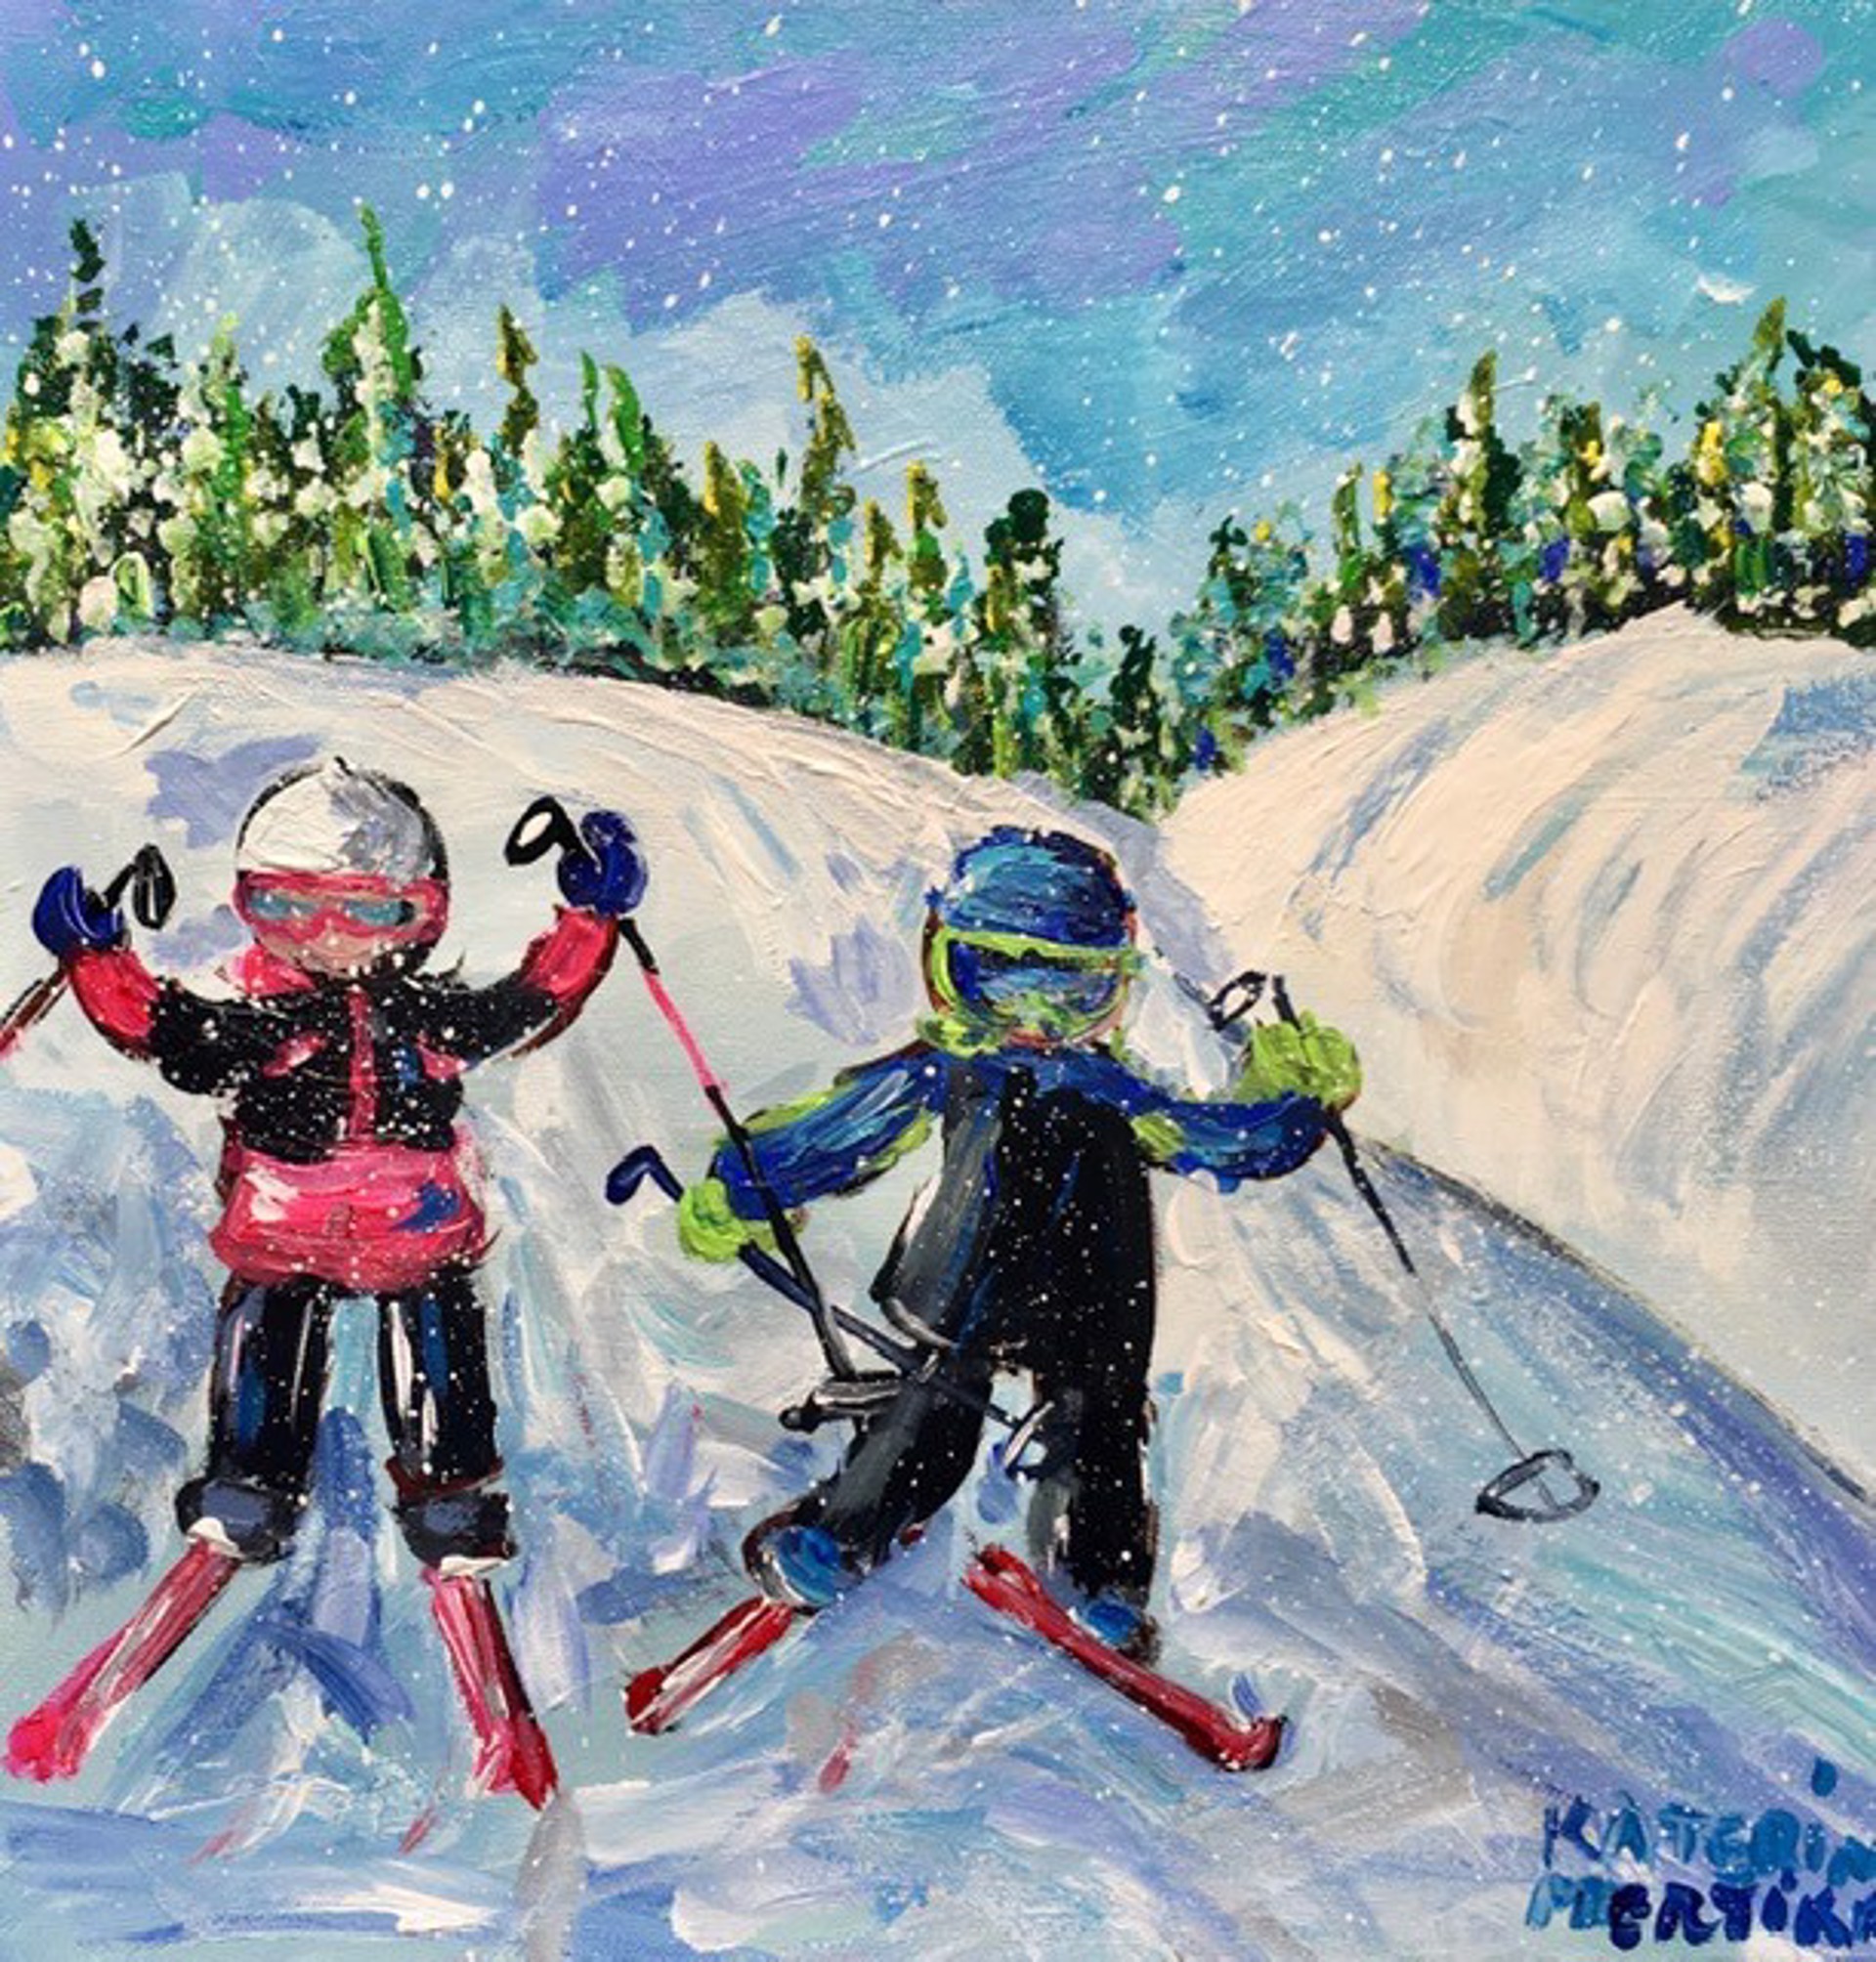 Let's Ski by Katerina Mertikas